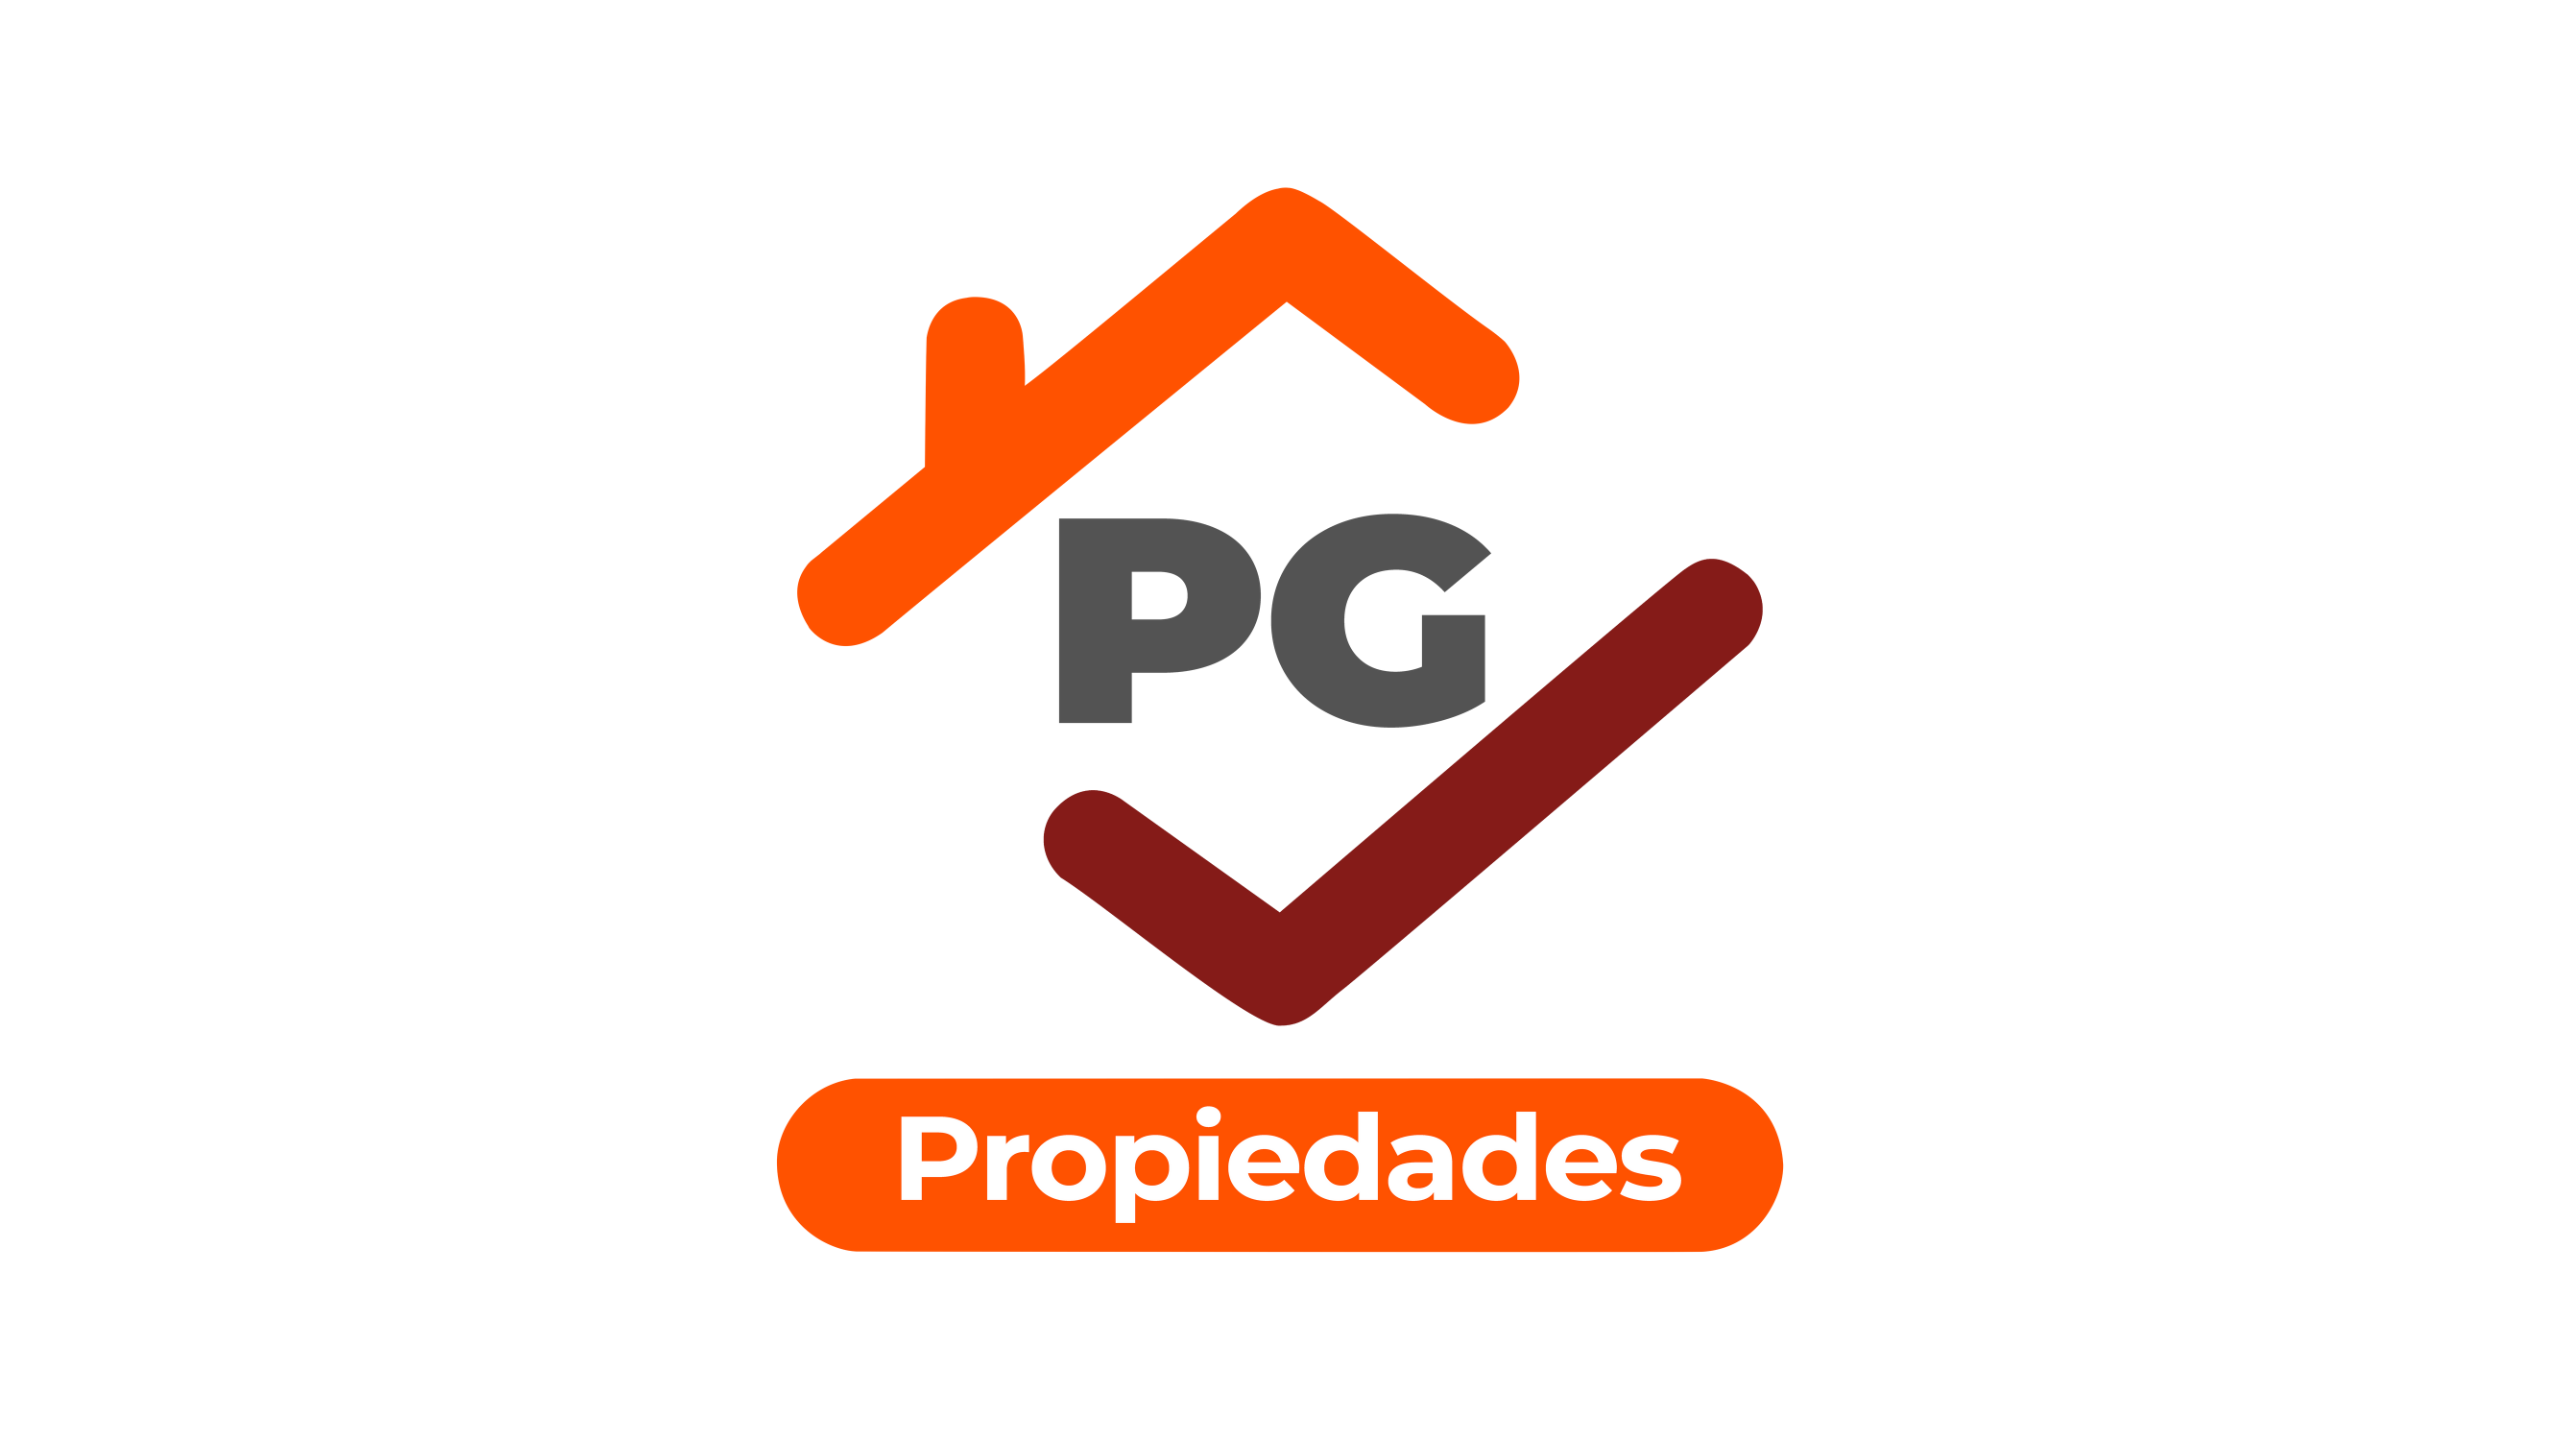 PG PROPIEDADES